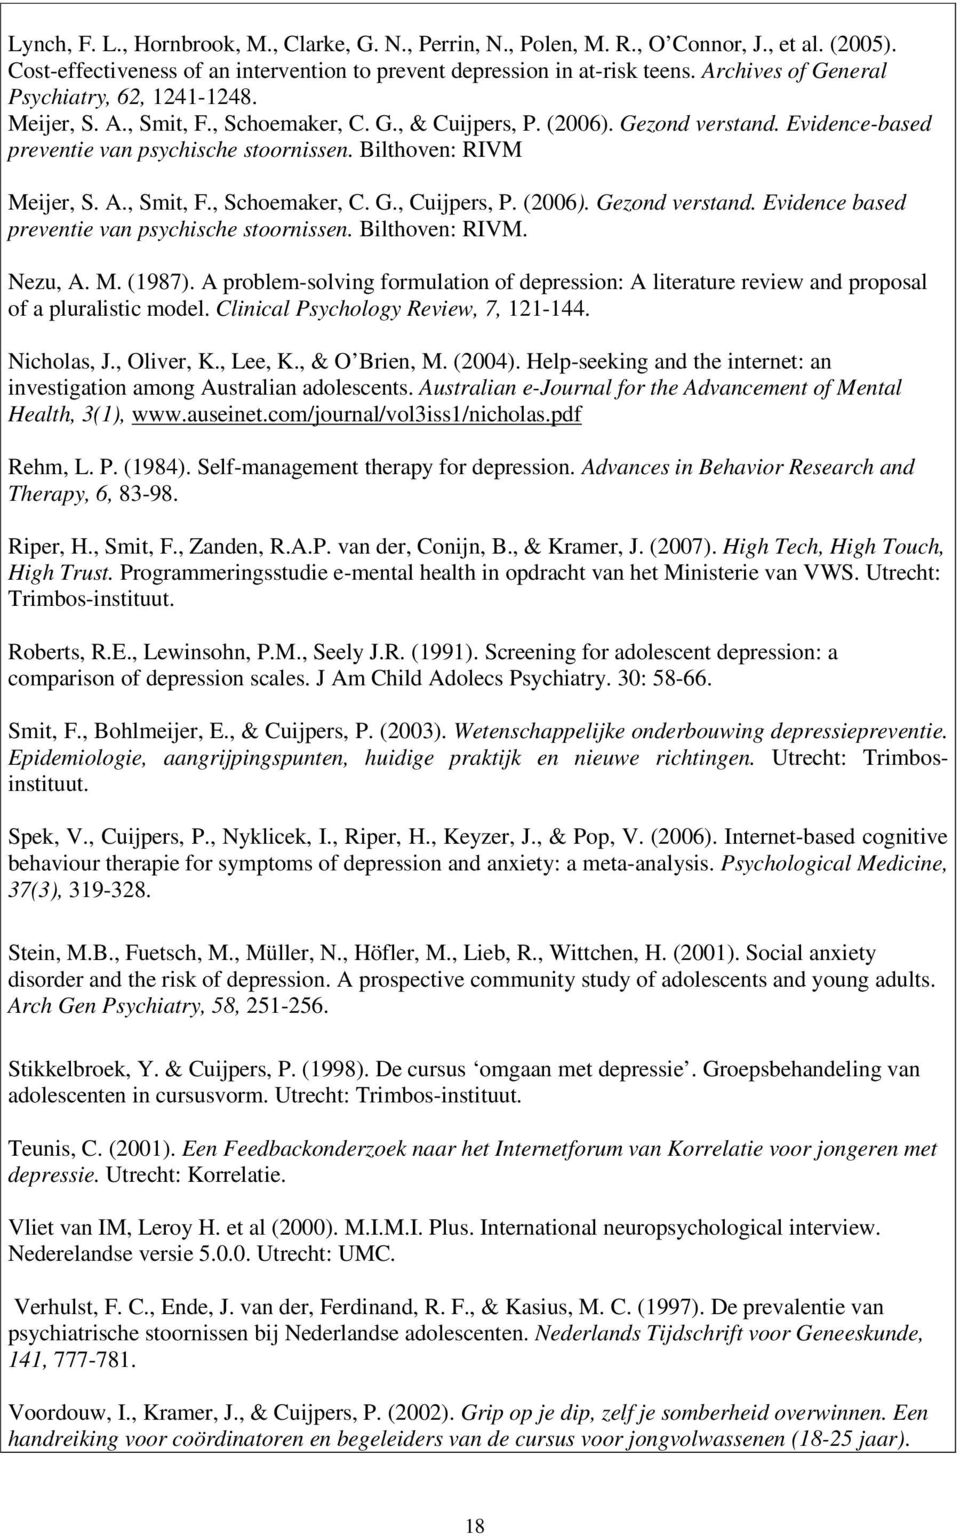 Bilthoven: RIVM Meijer, S. A., Smit, F., Schoemaker, C. G., Cuijpers, P. (2006). Gezond verstand. Evidence based preventie van psychische stoornissen. Bilthoven: RIVM. Nezu, A. M. (1987).